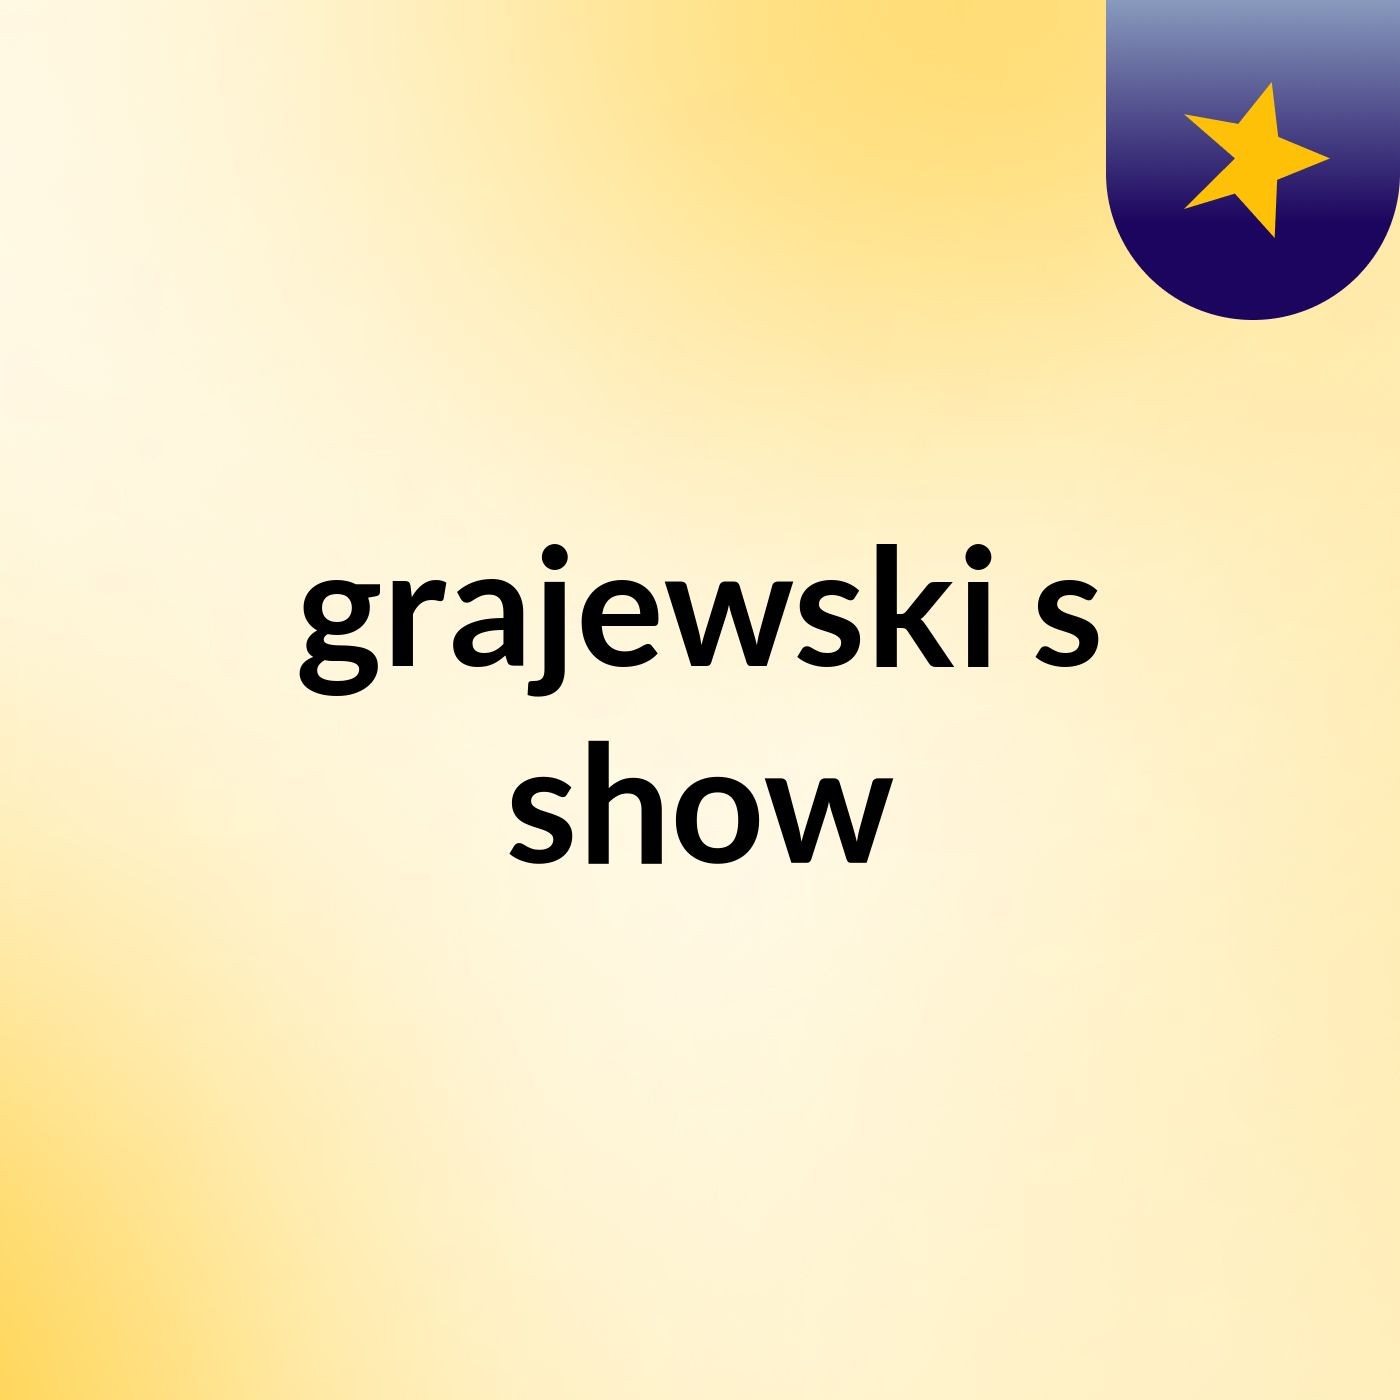 grajewski's show